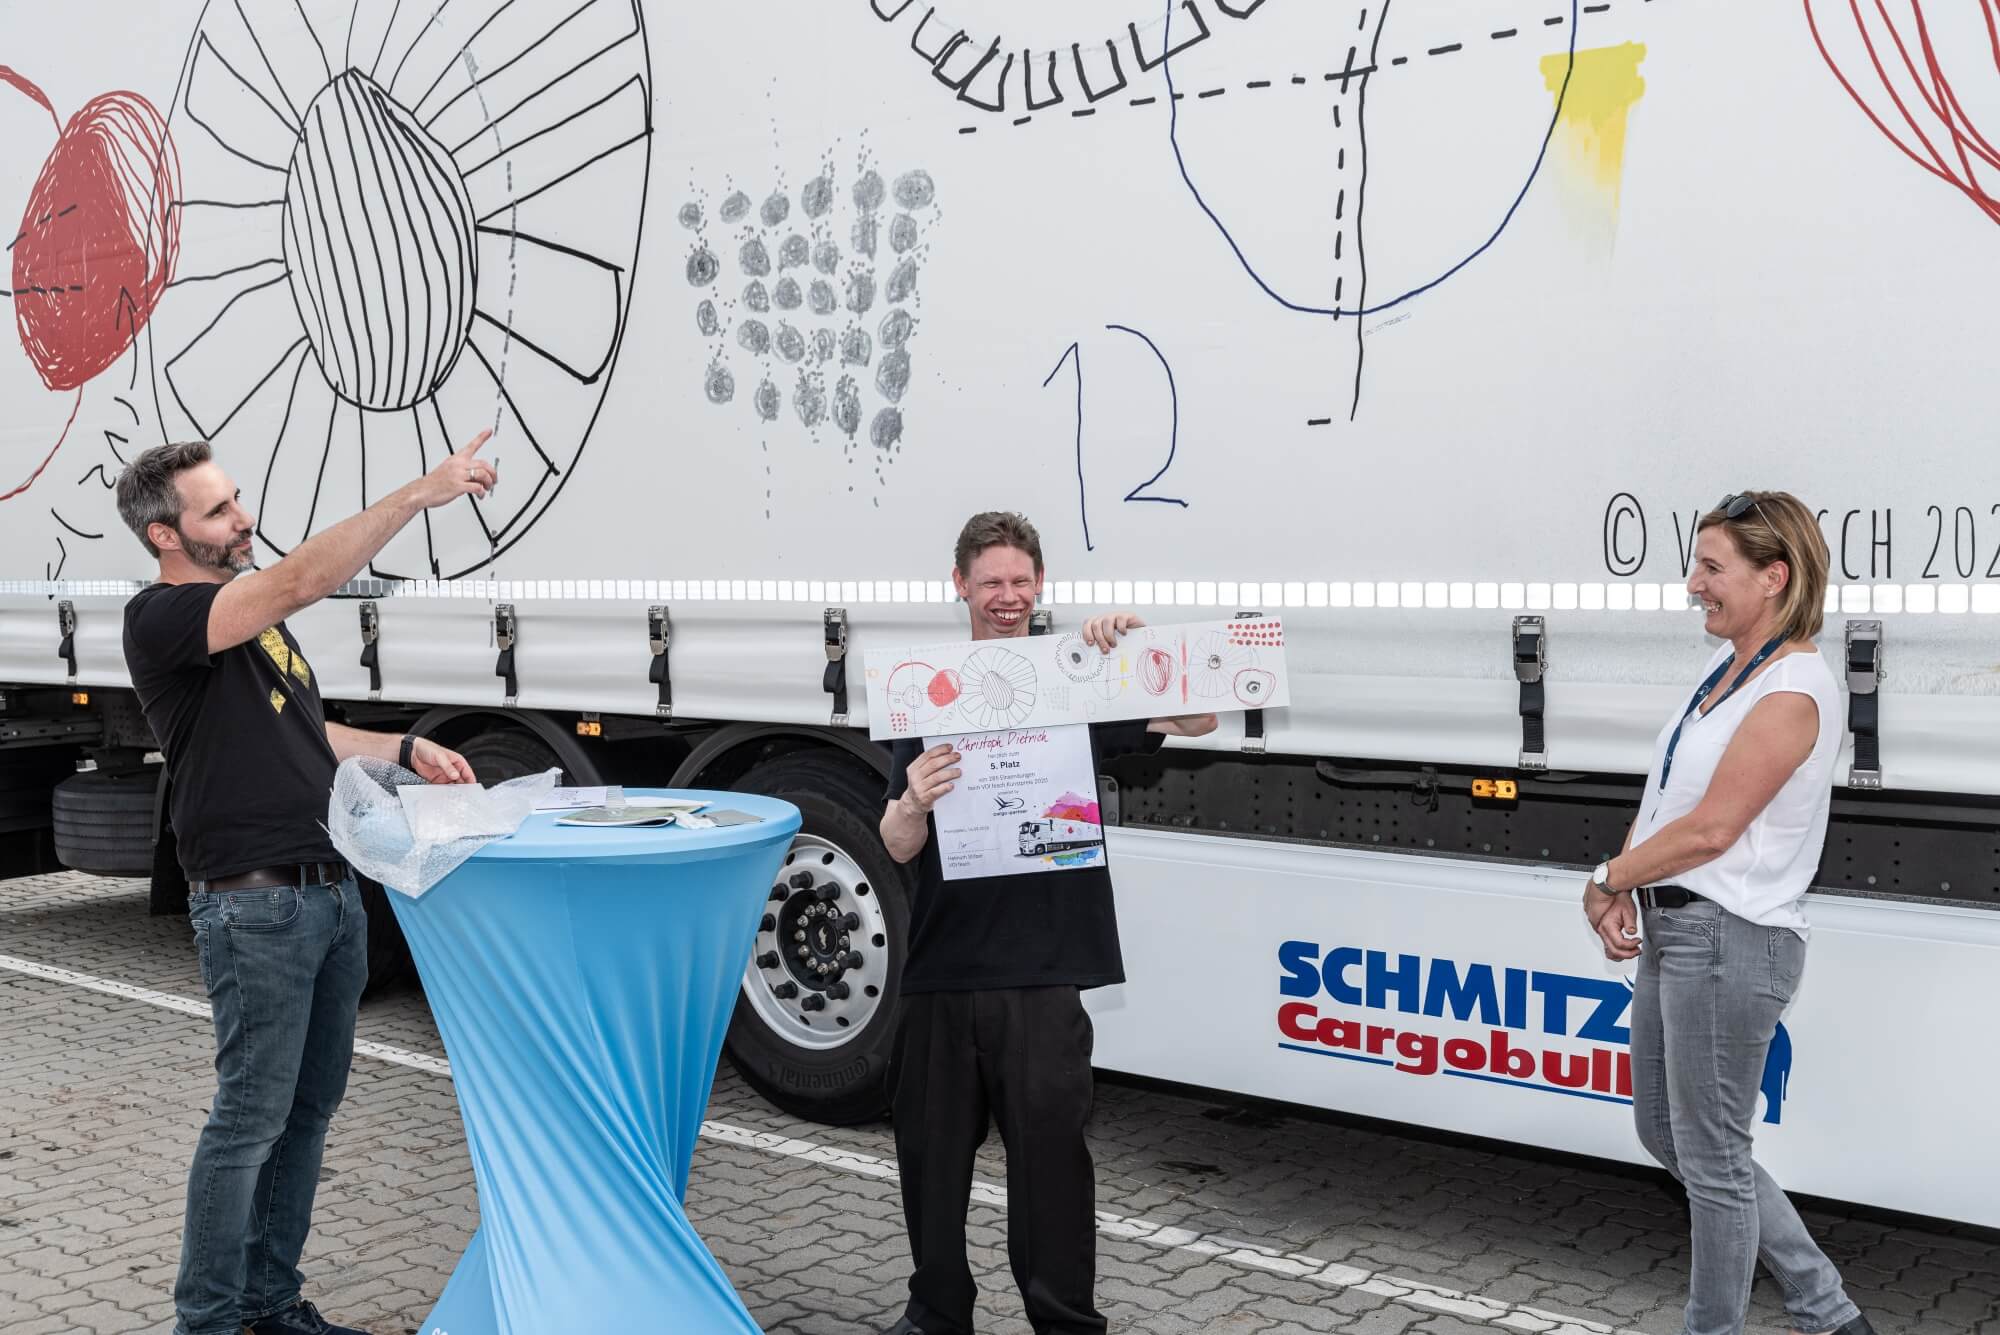 VOI fesch Initiator Helmuth Stöber zeigt auf den LKW mit dem Motiv "Verbindungen". Neben ihm steht der Künstler Christoph Dietrich, welcher das Motiv gemalt hat. Es zeigt kreise und verschiedene geometrische Formen.